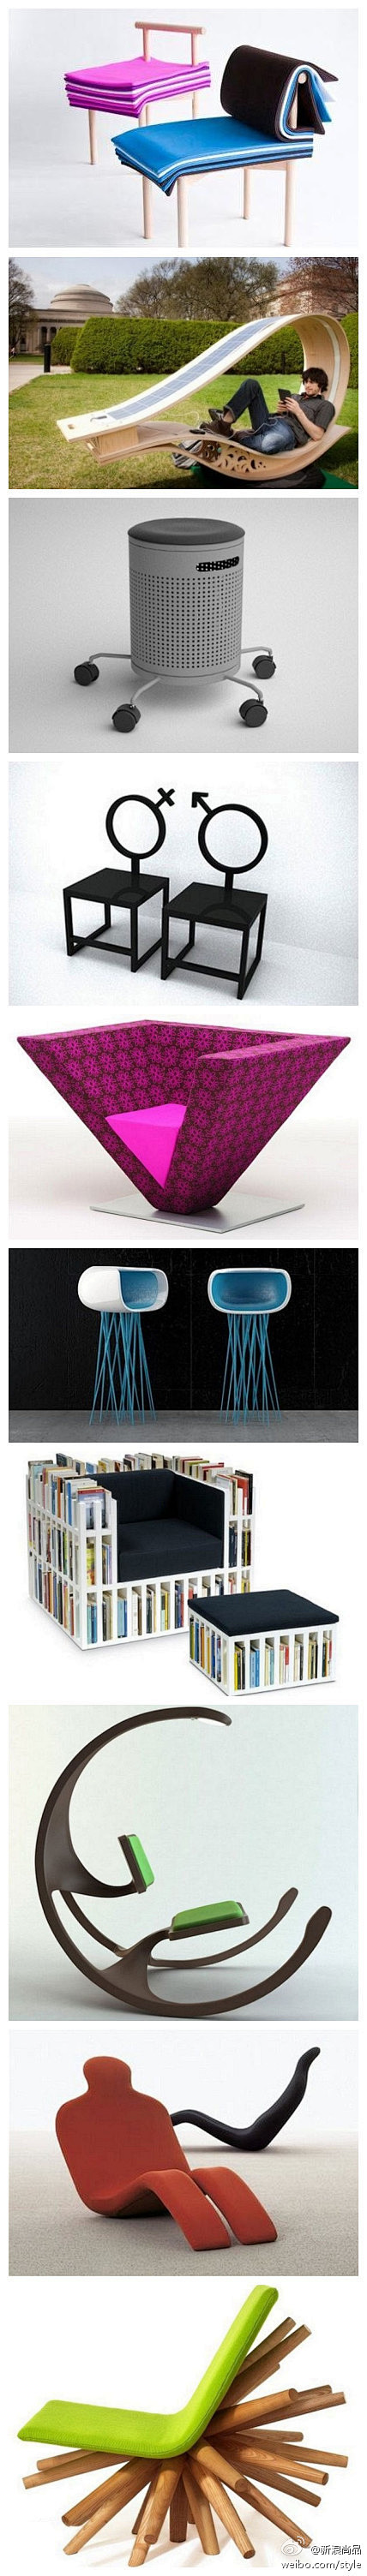 【创意座椅设计】你见过最新潮最有创意的椅...